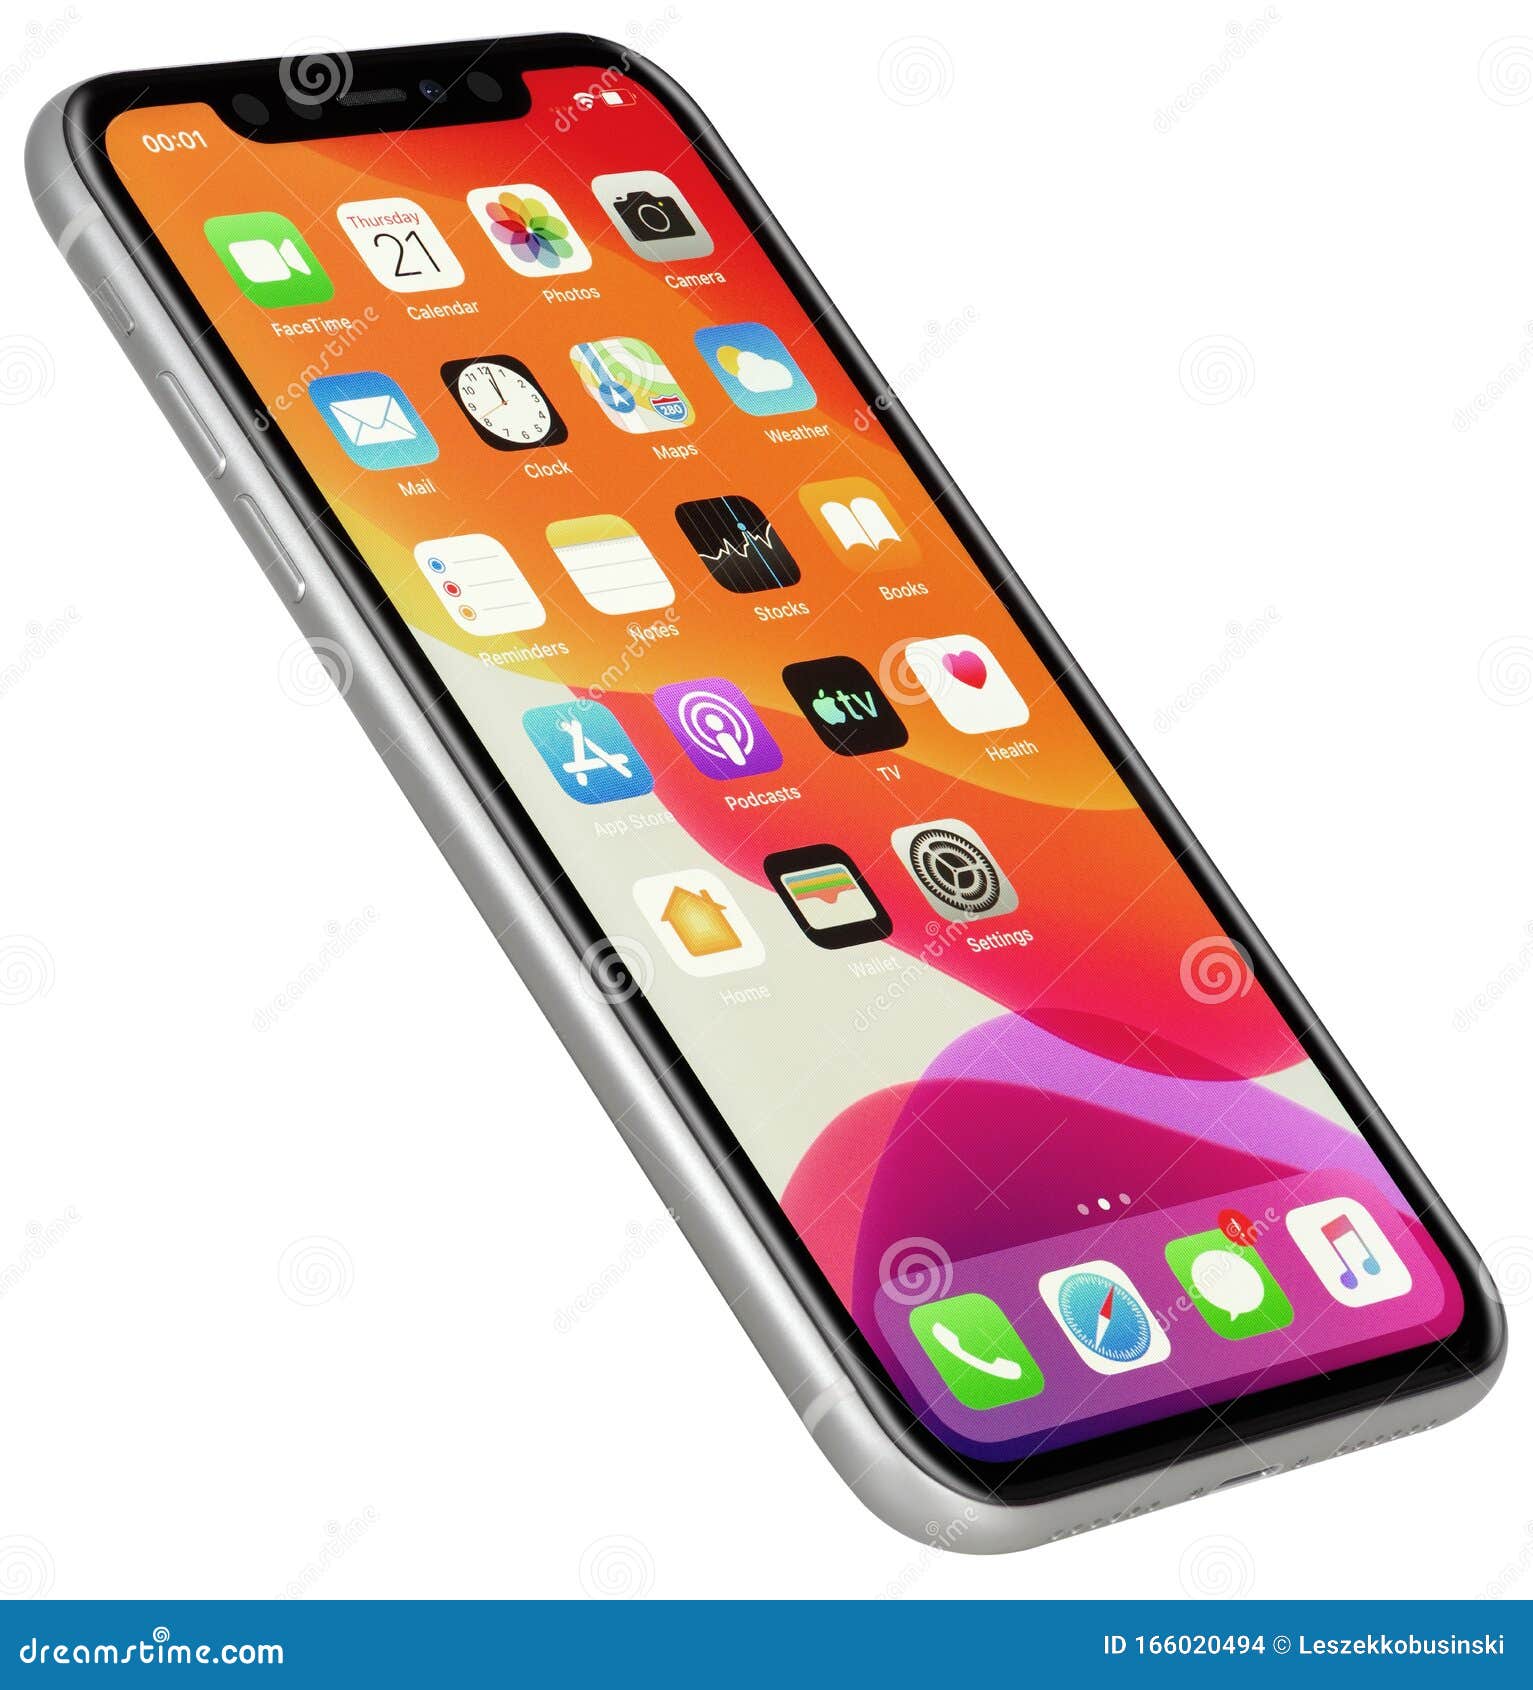 Nếu bạn đang tìm kiếm một hình ảnh chất lượng của iPhone 11 màu bạc, bạn sẽ không thể bỏ qua cập nhật nội dung về chủ đề này, bởi vì nó mang đến một góc nhìn tuyệt vời về thiết kế đẹp mắt và tính năng vượt trội của chiếc iPhone này.